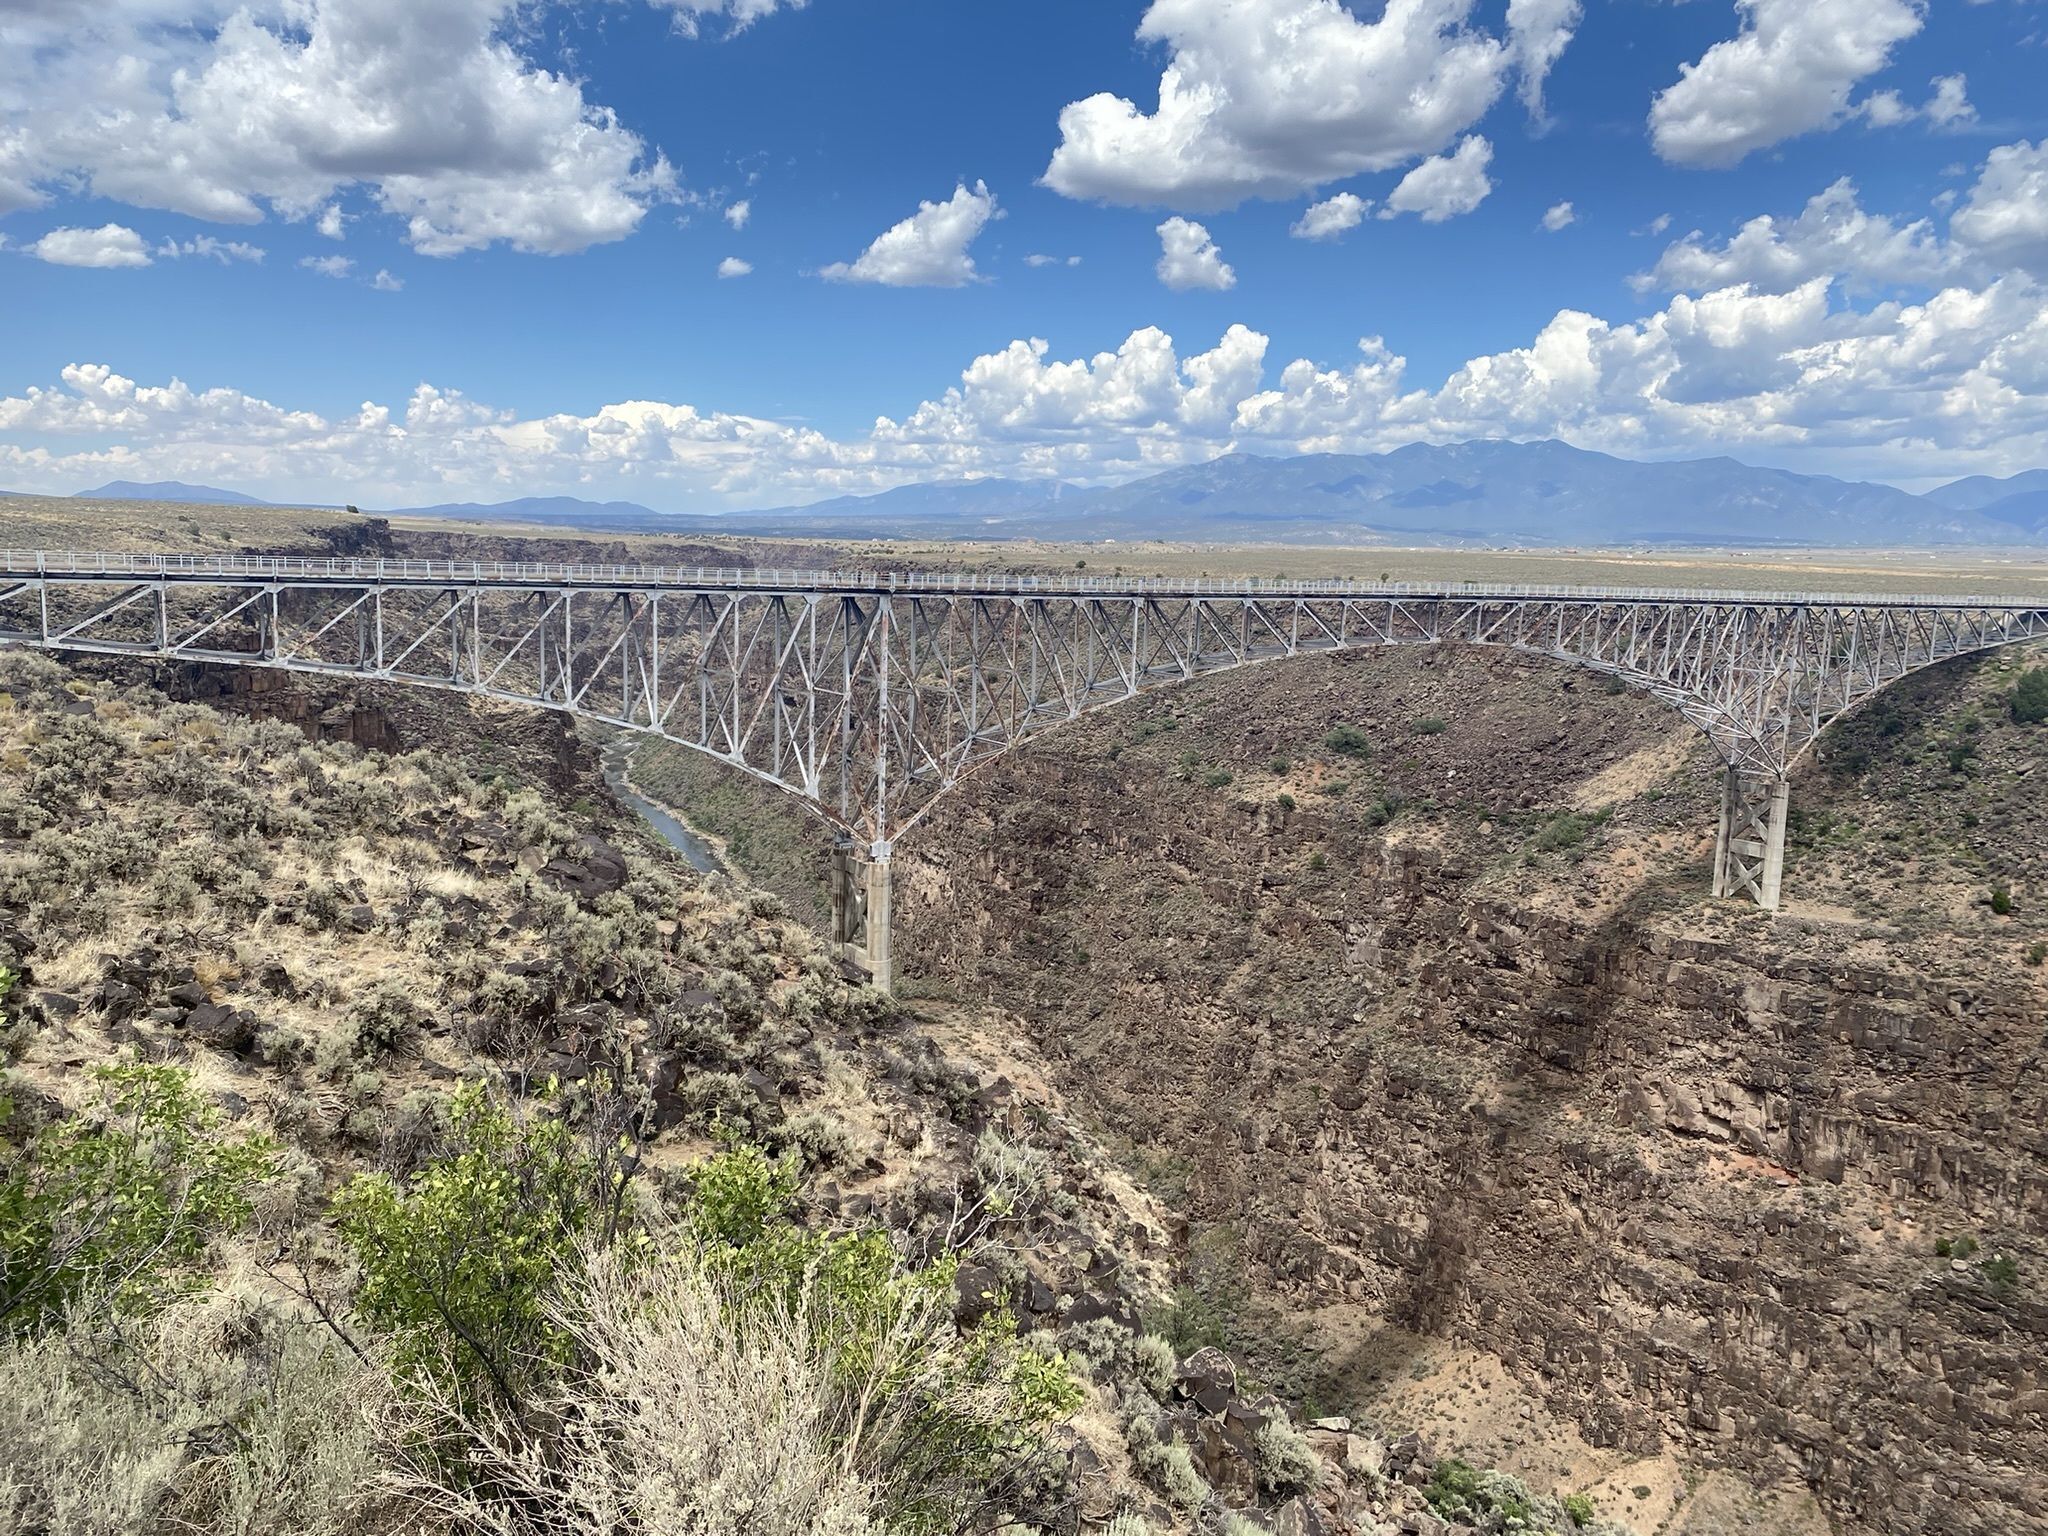 The Rio Grande Gorge Bridge in Taos, New Mexico